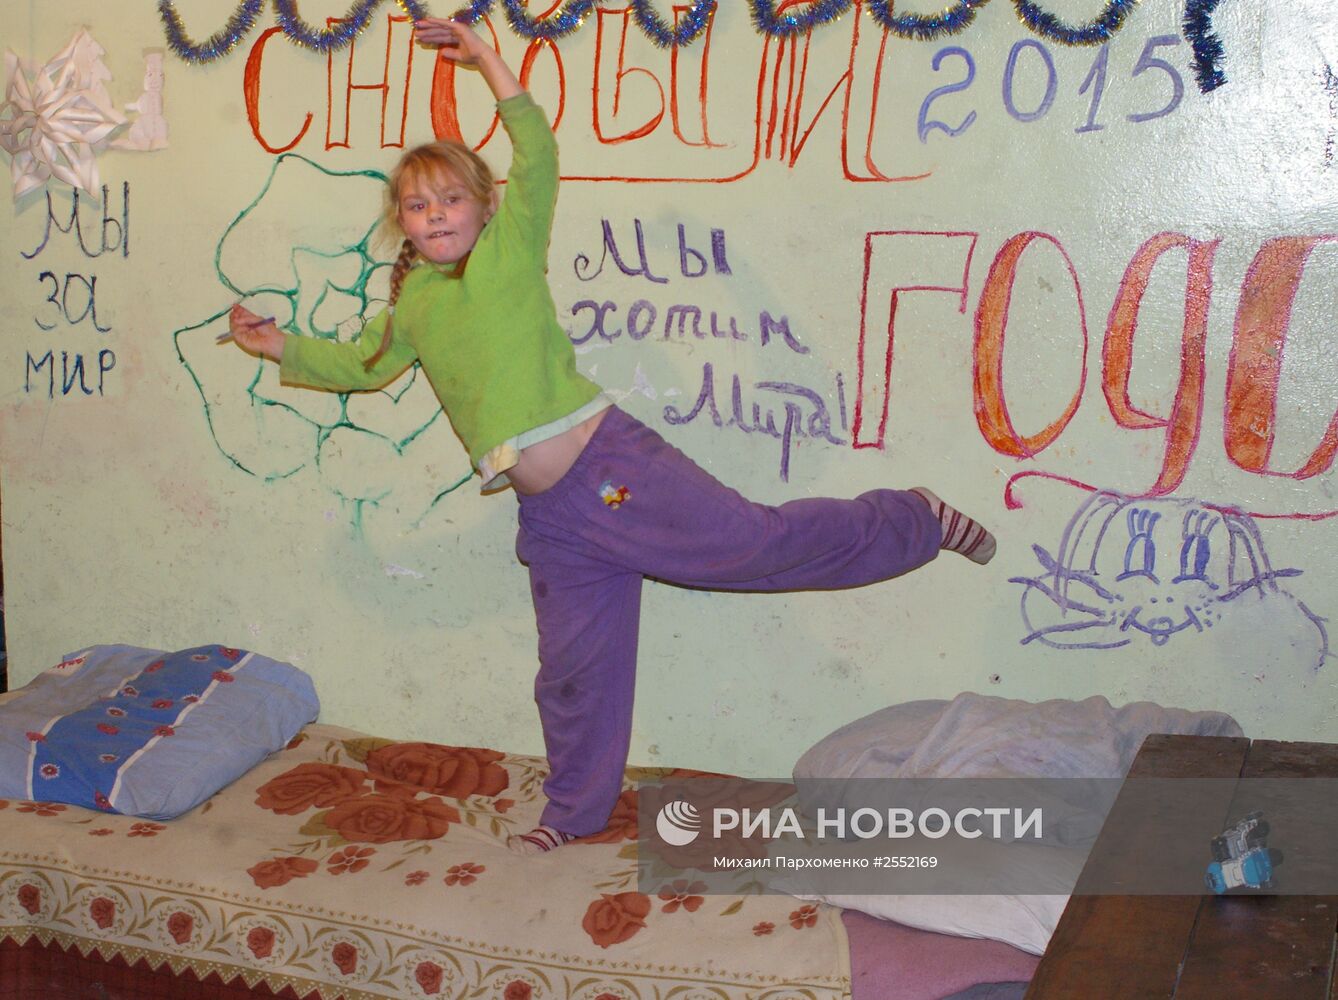 Жители Донецка, потерявшие свое жилье, готовятся встретить Новый год в бомбоубежище